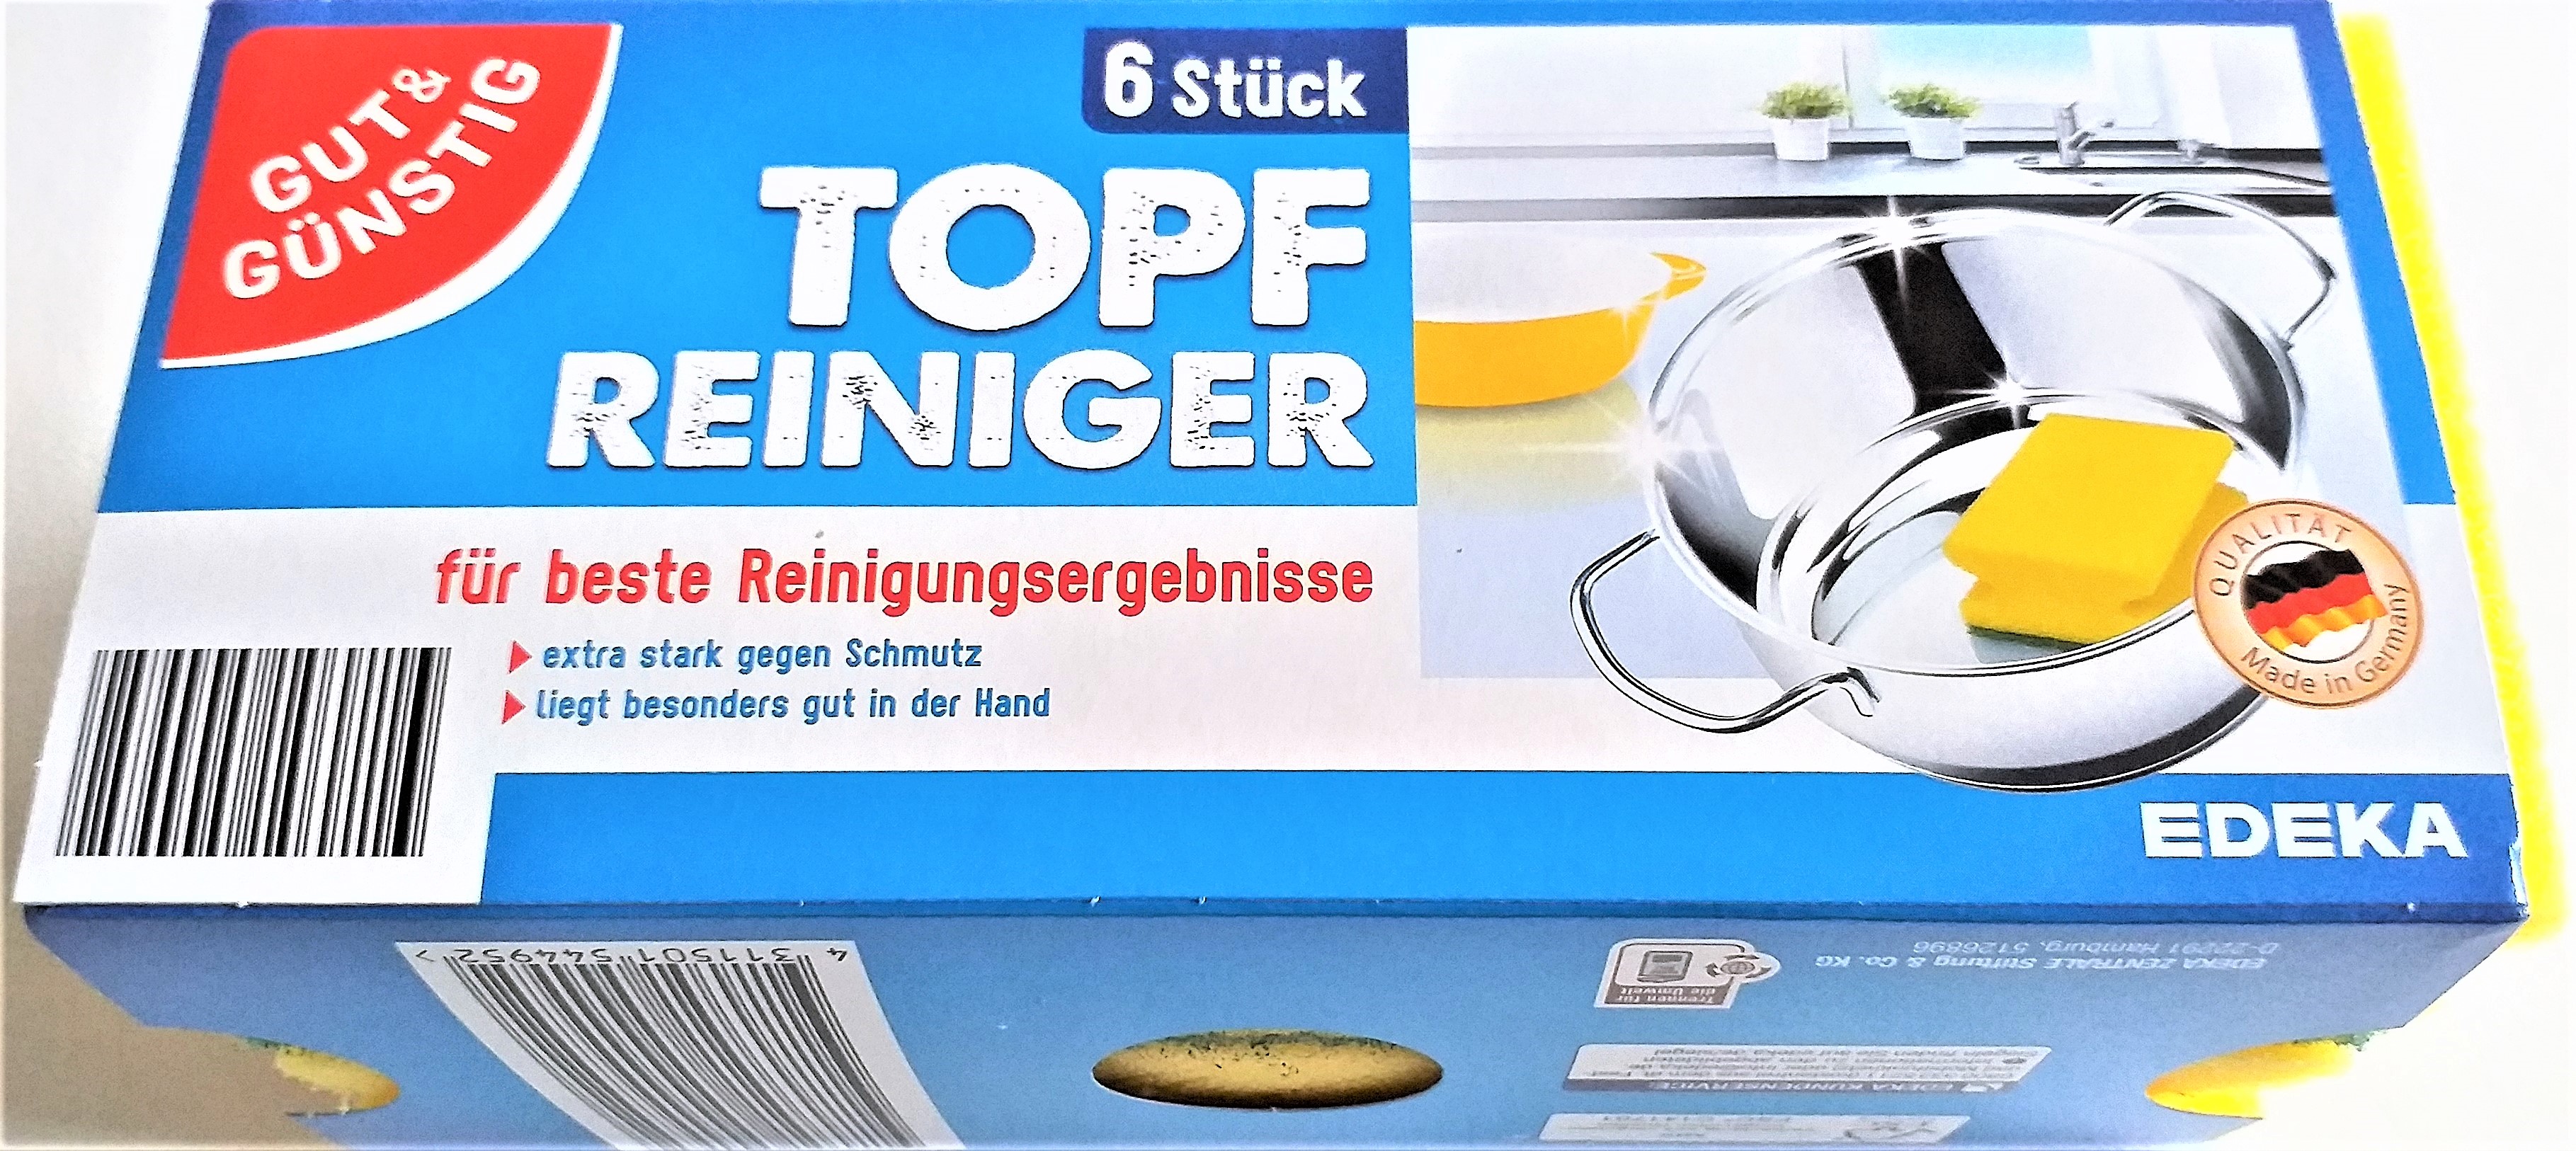 G&G Topf-Reiniger 6Sück 